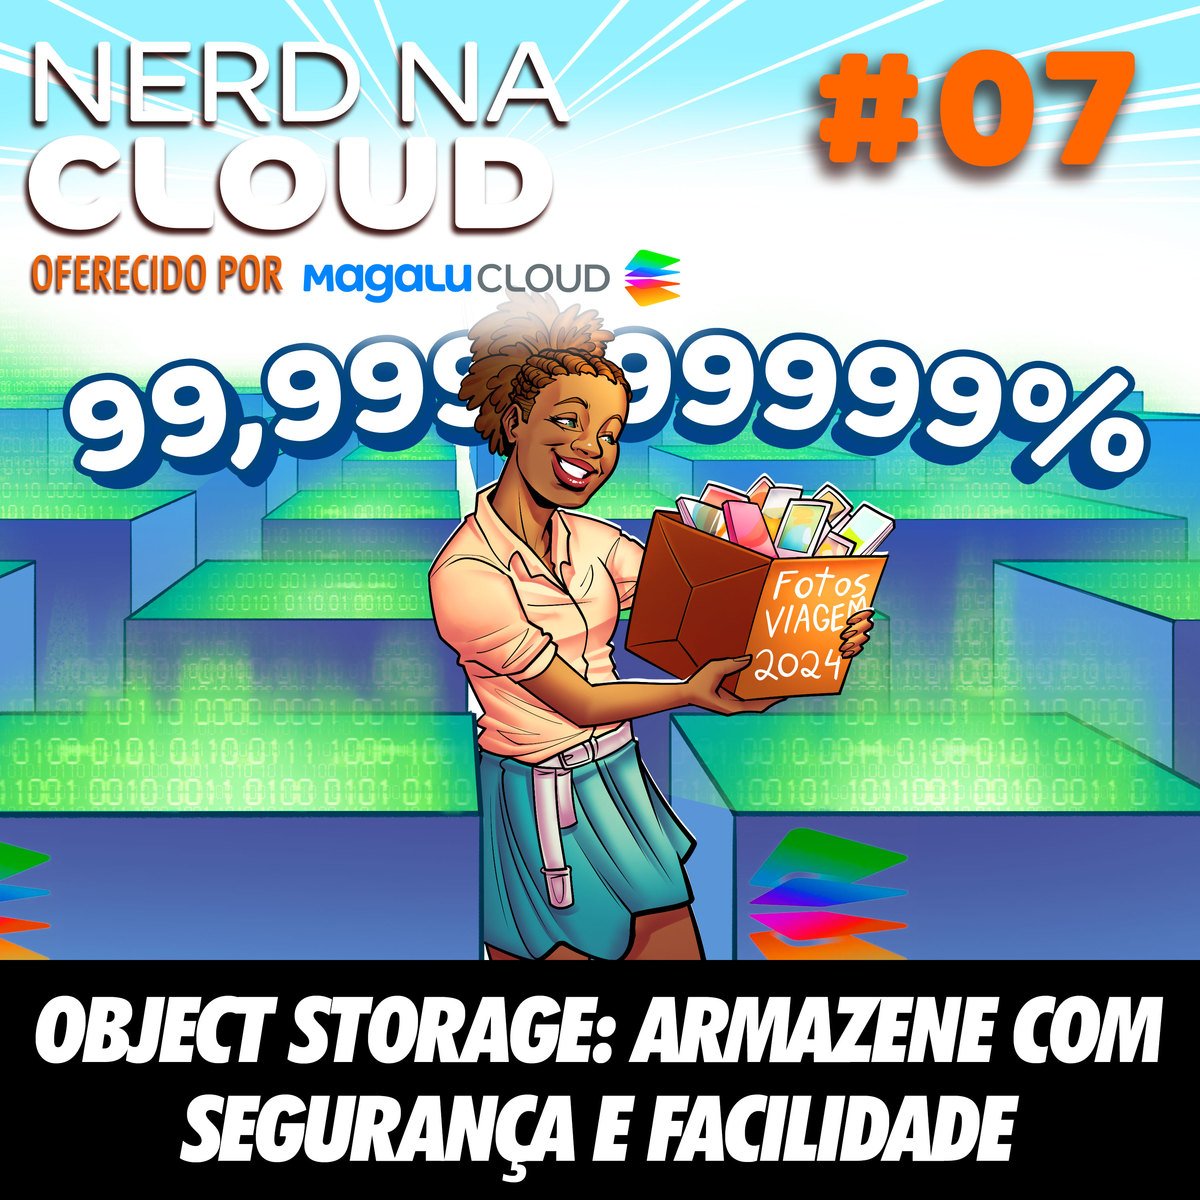 NerdCast 7 - Object Storage: Armazene com Segurança e Facilidade